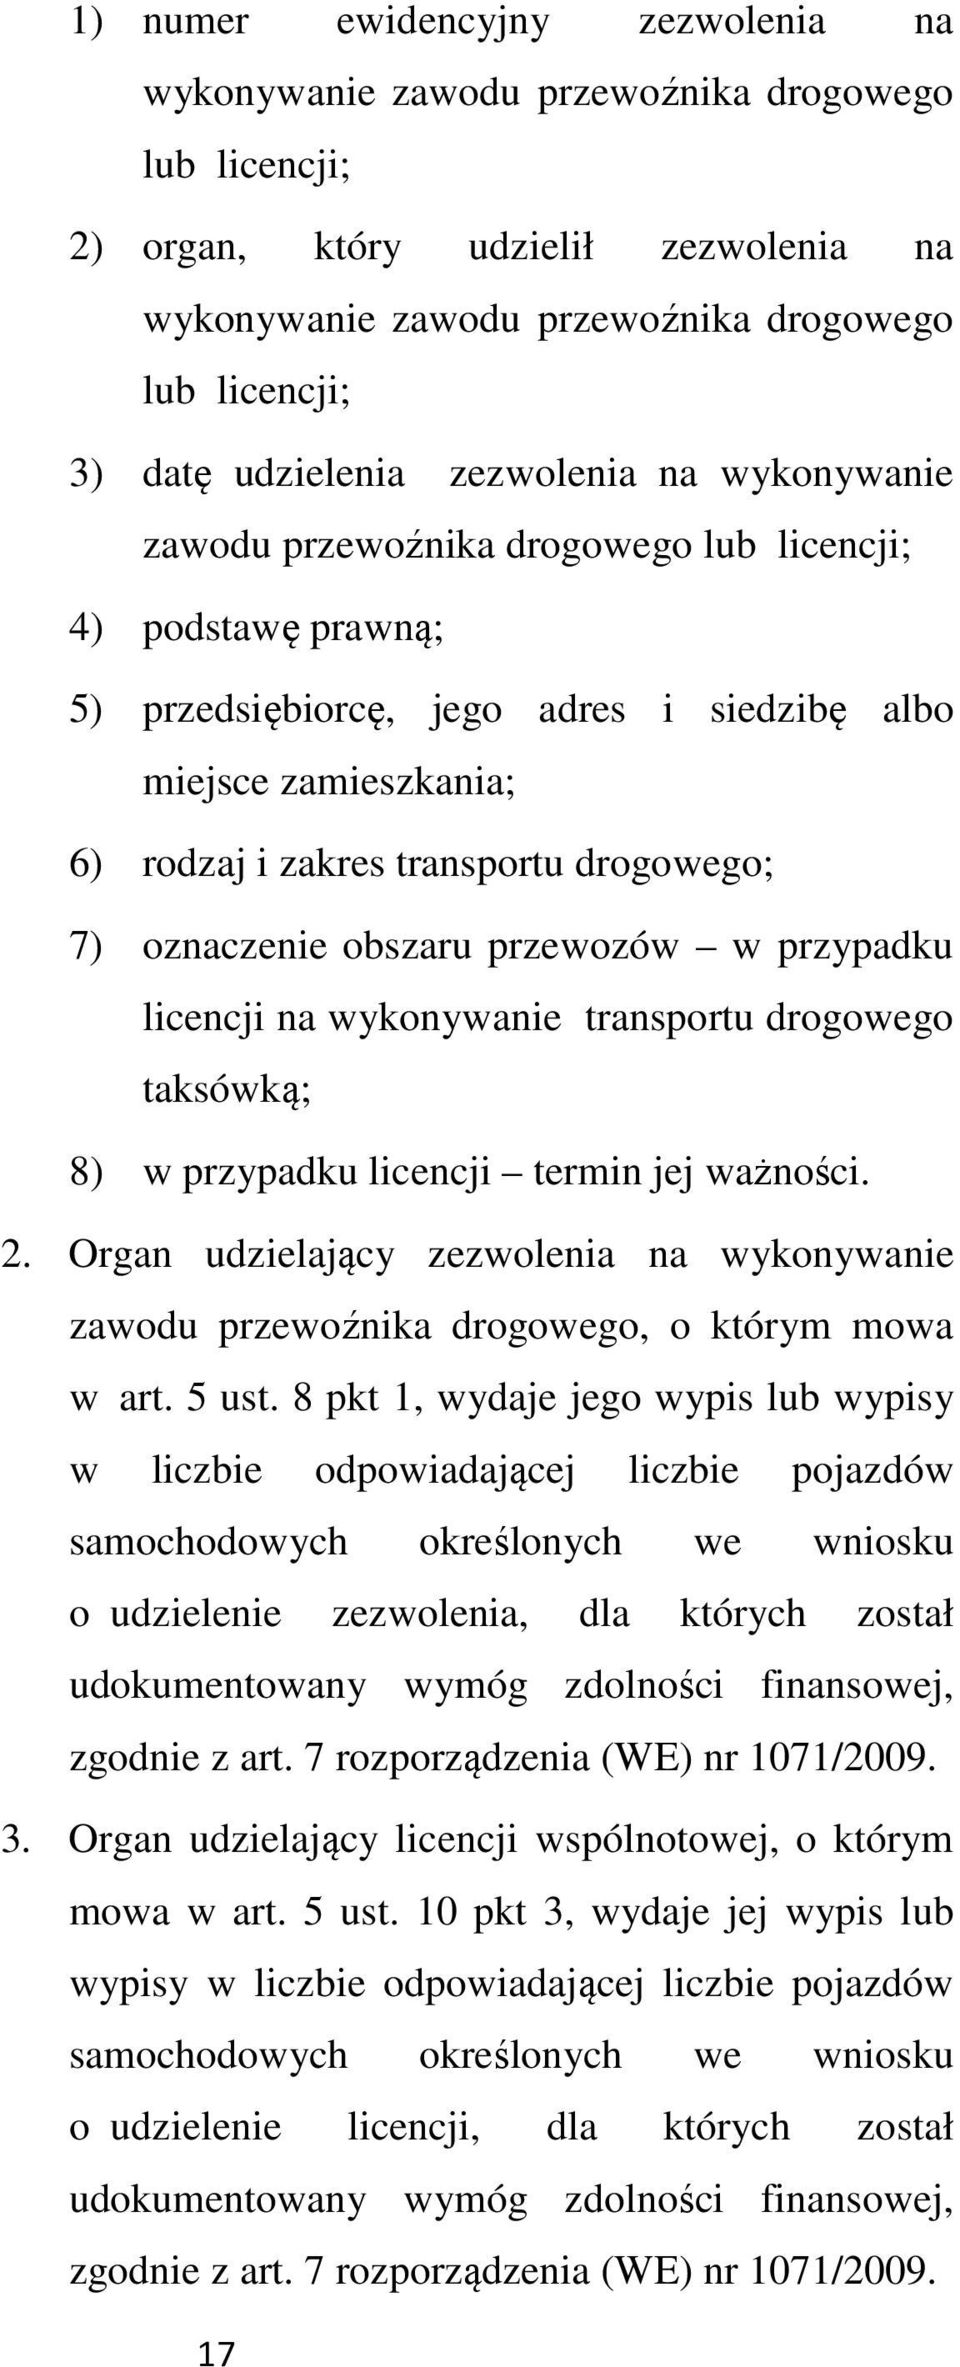 drogowego; 7) oznaczenie obszaru przewozów w przypadku licencji na wykonywanie transportu drogowego taksówką; 8) w przypadku licencji termin jej ważności. 2.